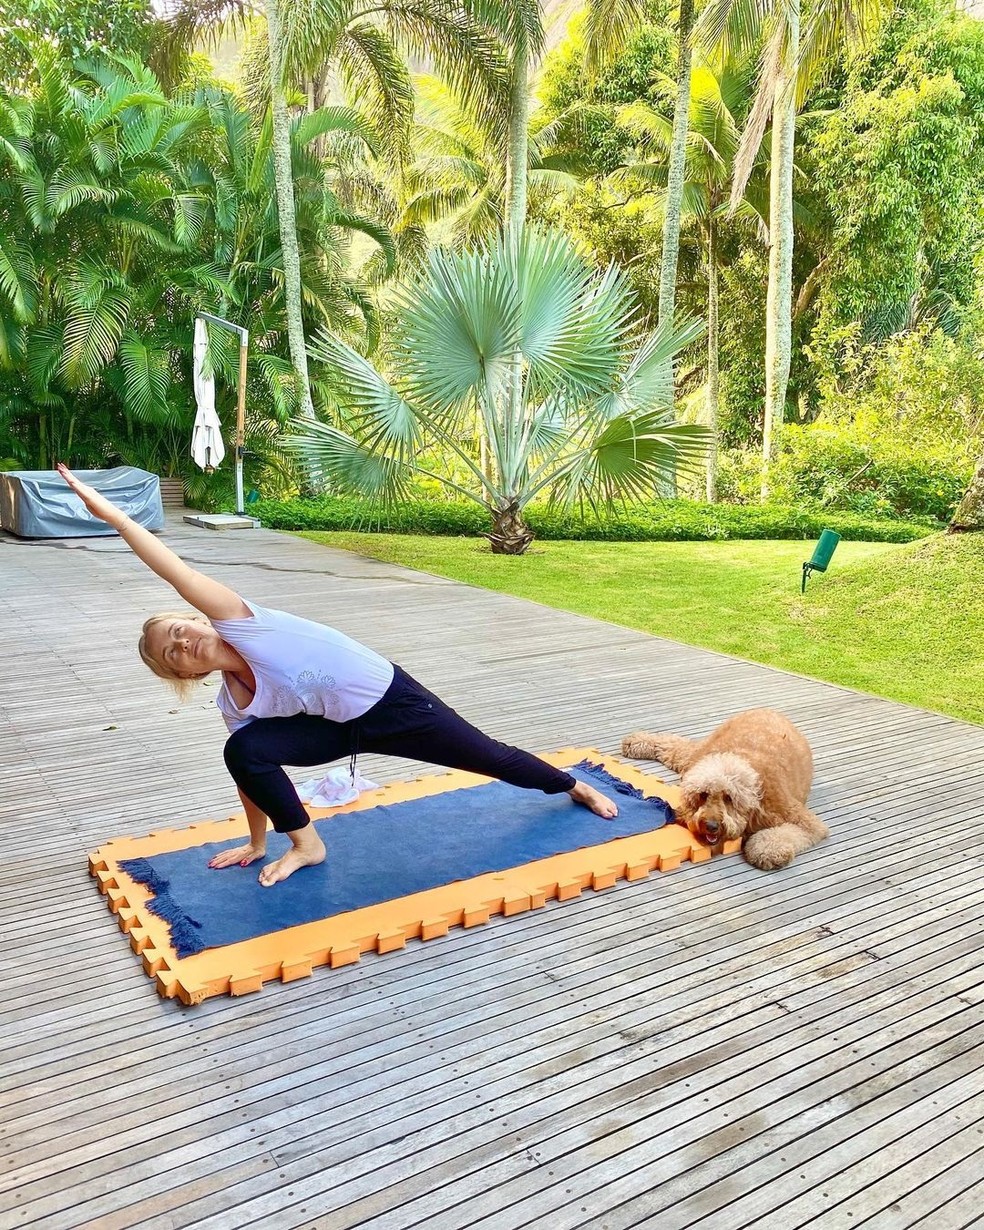 Angélica pratica yoga no quintal de sua casa no Rio de Janeiro — Foto: Reprodução/Instagram